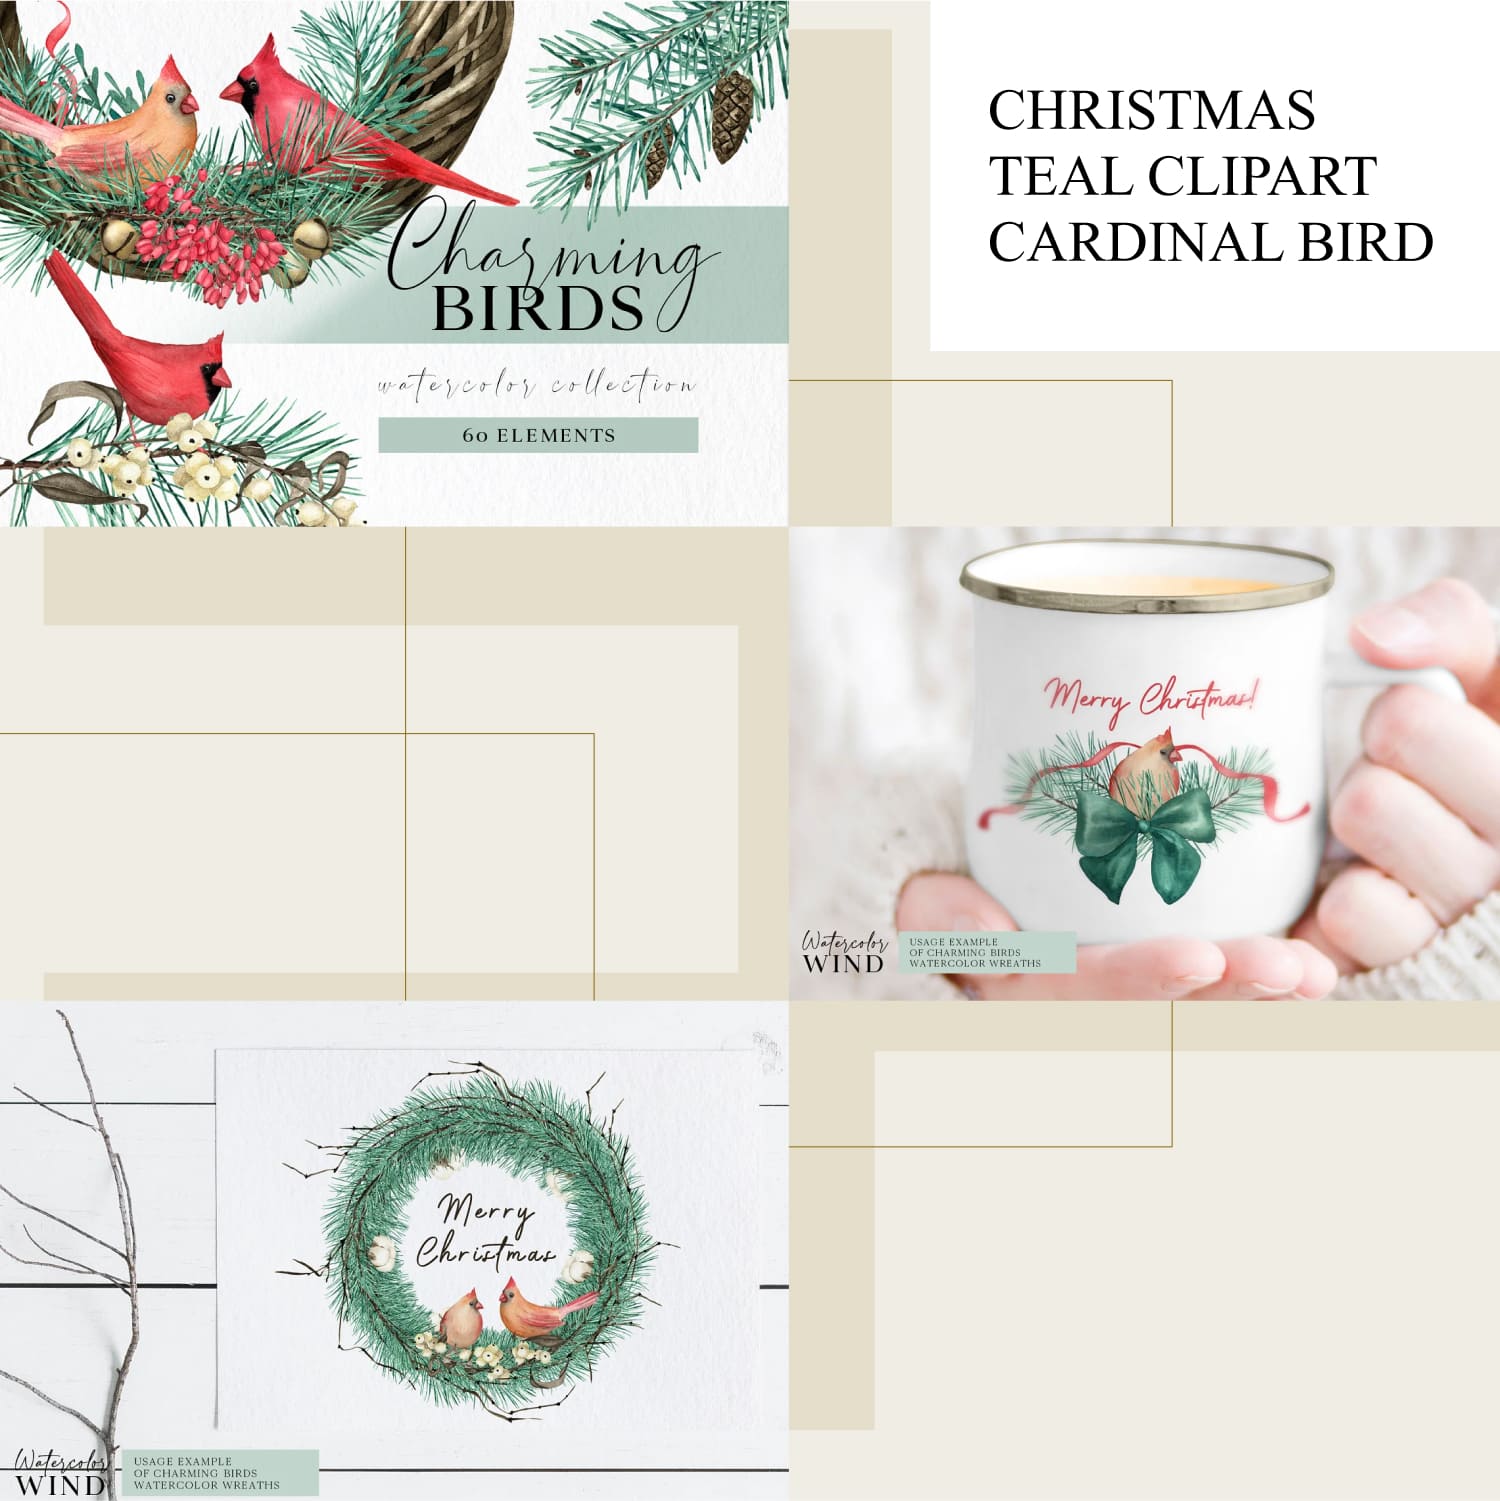 Christmas Teal Clipart Cardinal Bird.